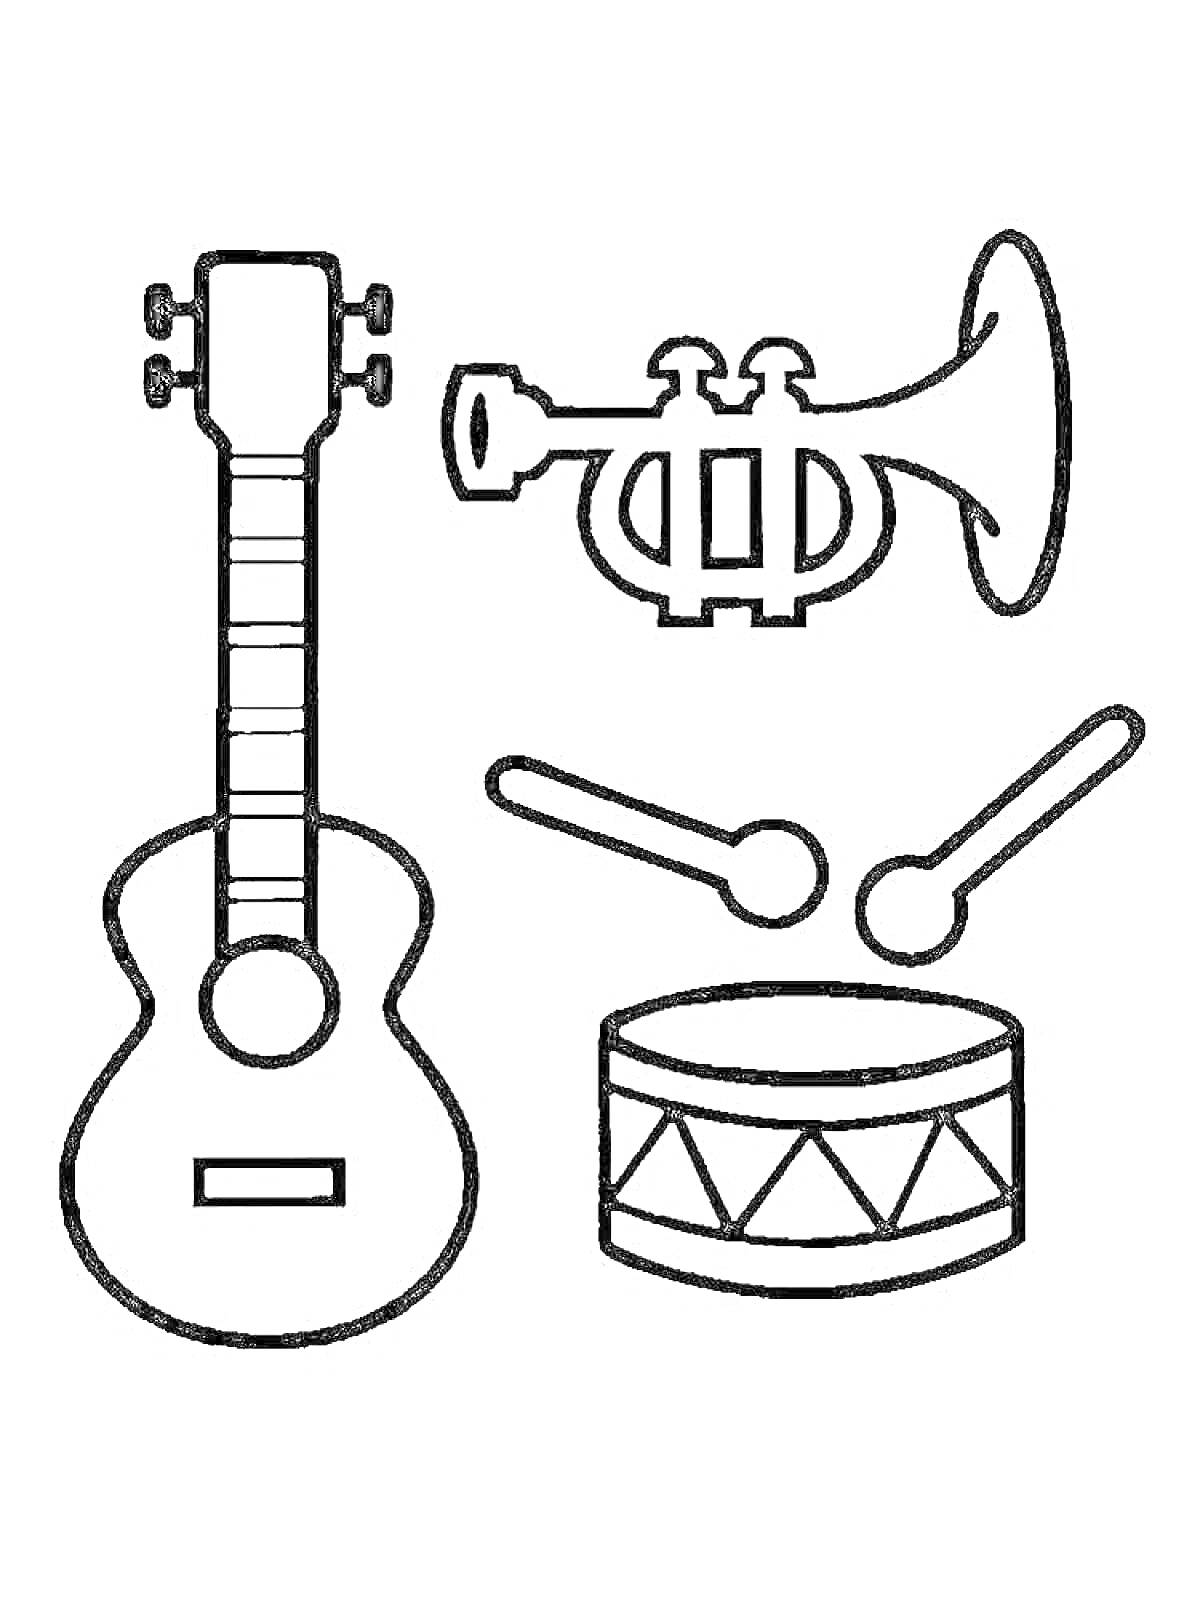 Раскраска музыкальные инструменты - гитара, труба, барабан с палочками